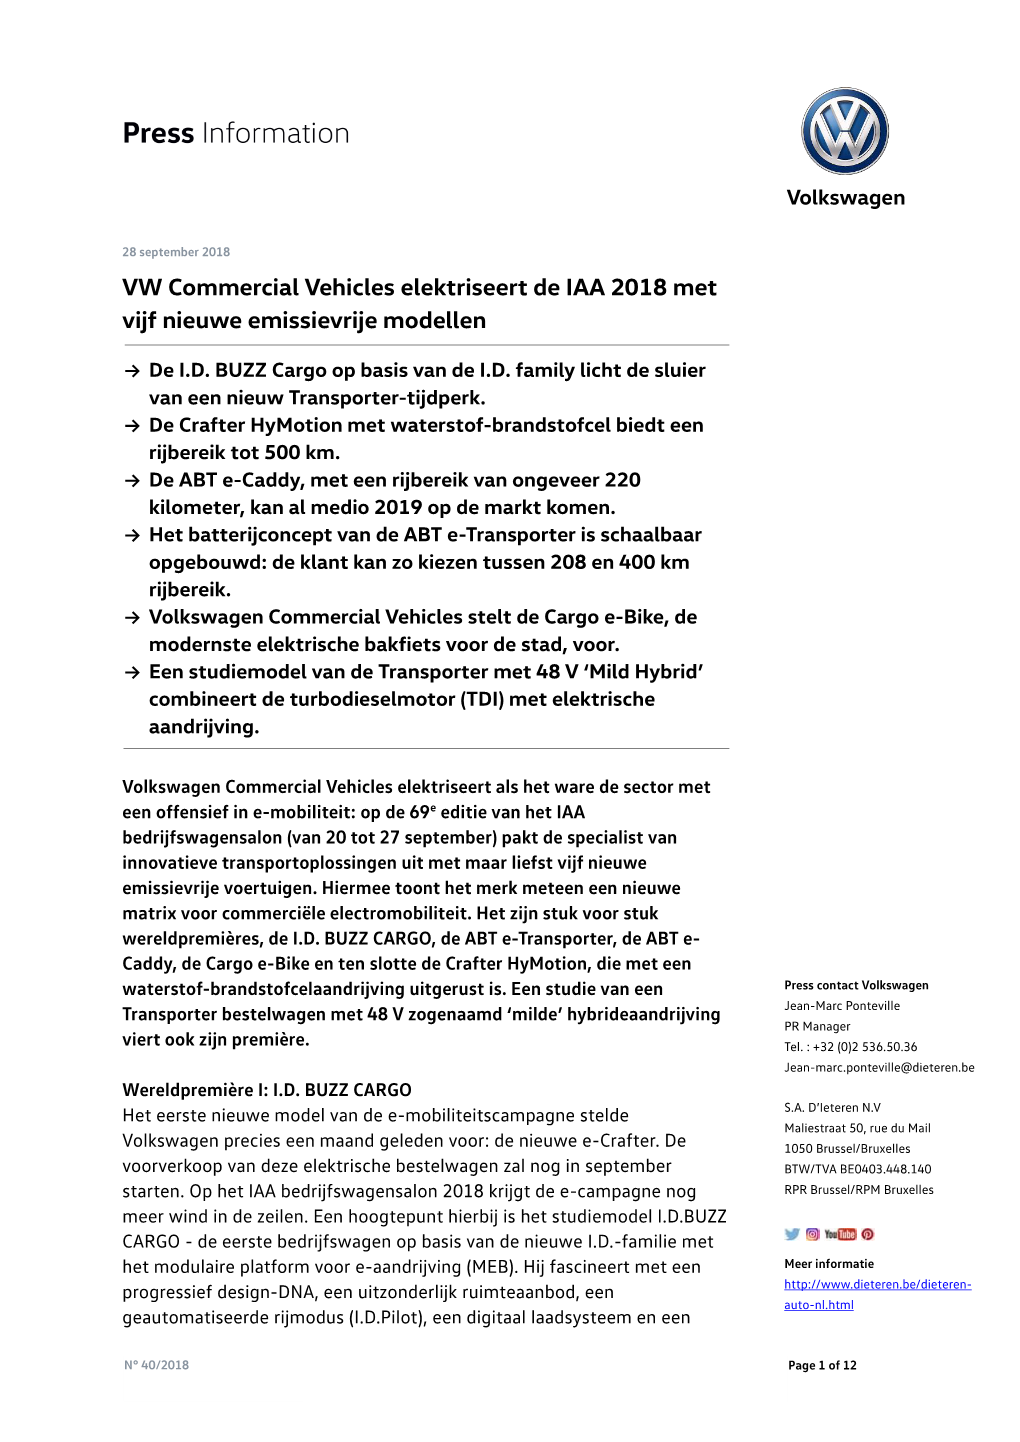 VW Commercial Vehicles Elektriseert De IAA 2018 Met Vijf Nieuwe Emissievrije Modellen